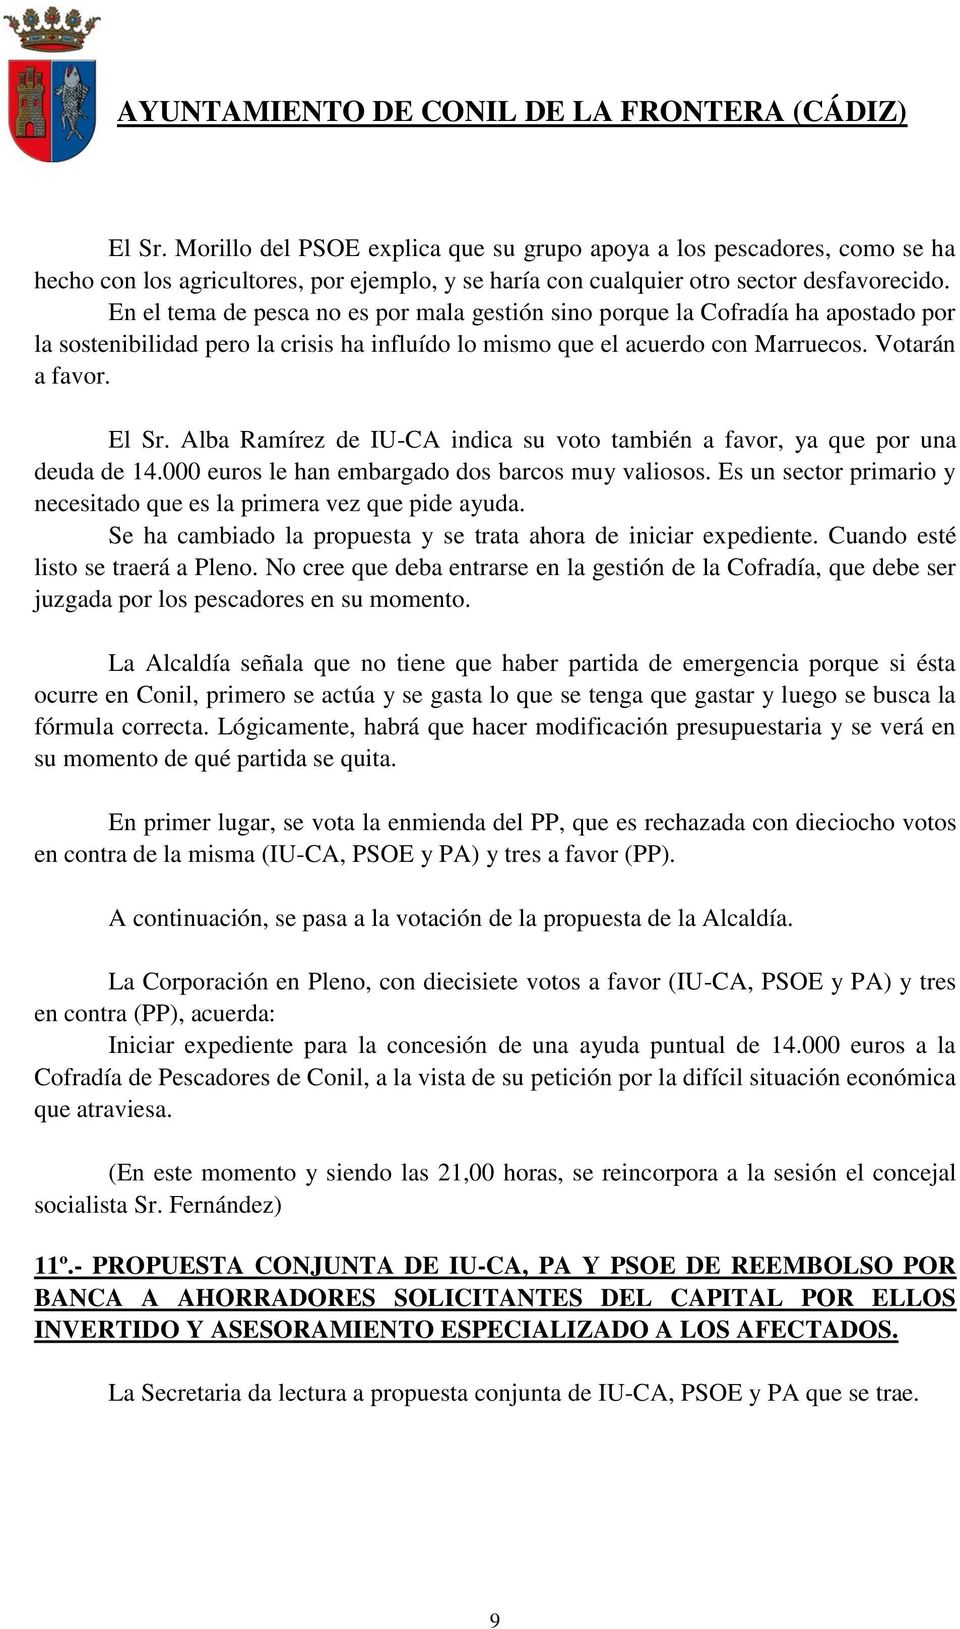 Alba Ramírez de IU-CA indica su voto también a favor, ya que por una deuda de 14.000 euros le han embargado dos barcos muy valiosos.